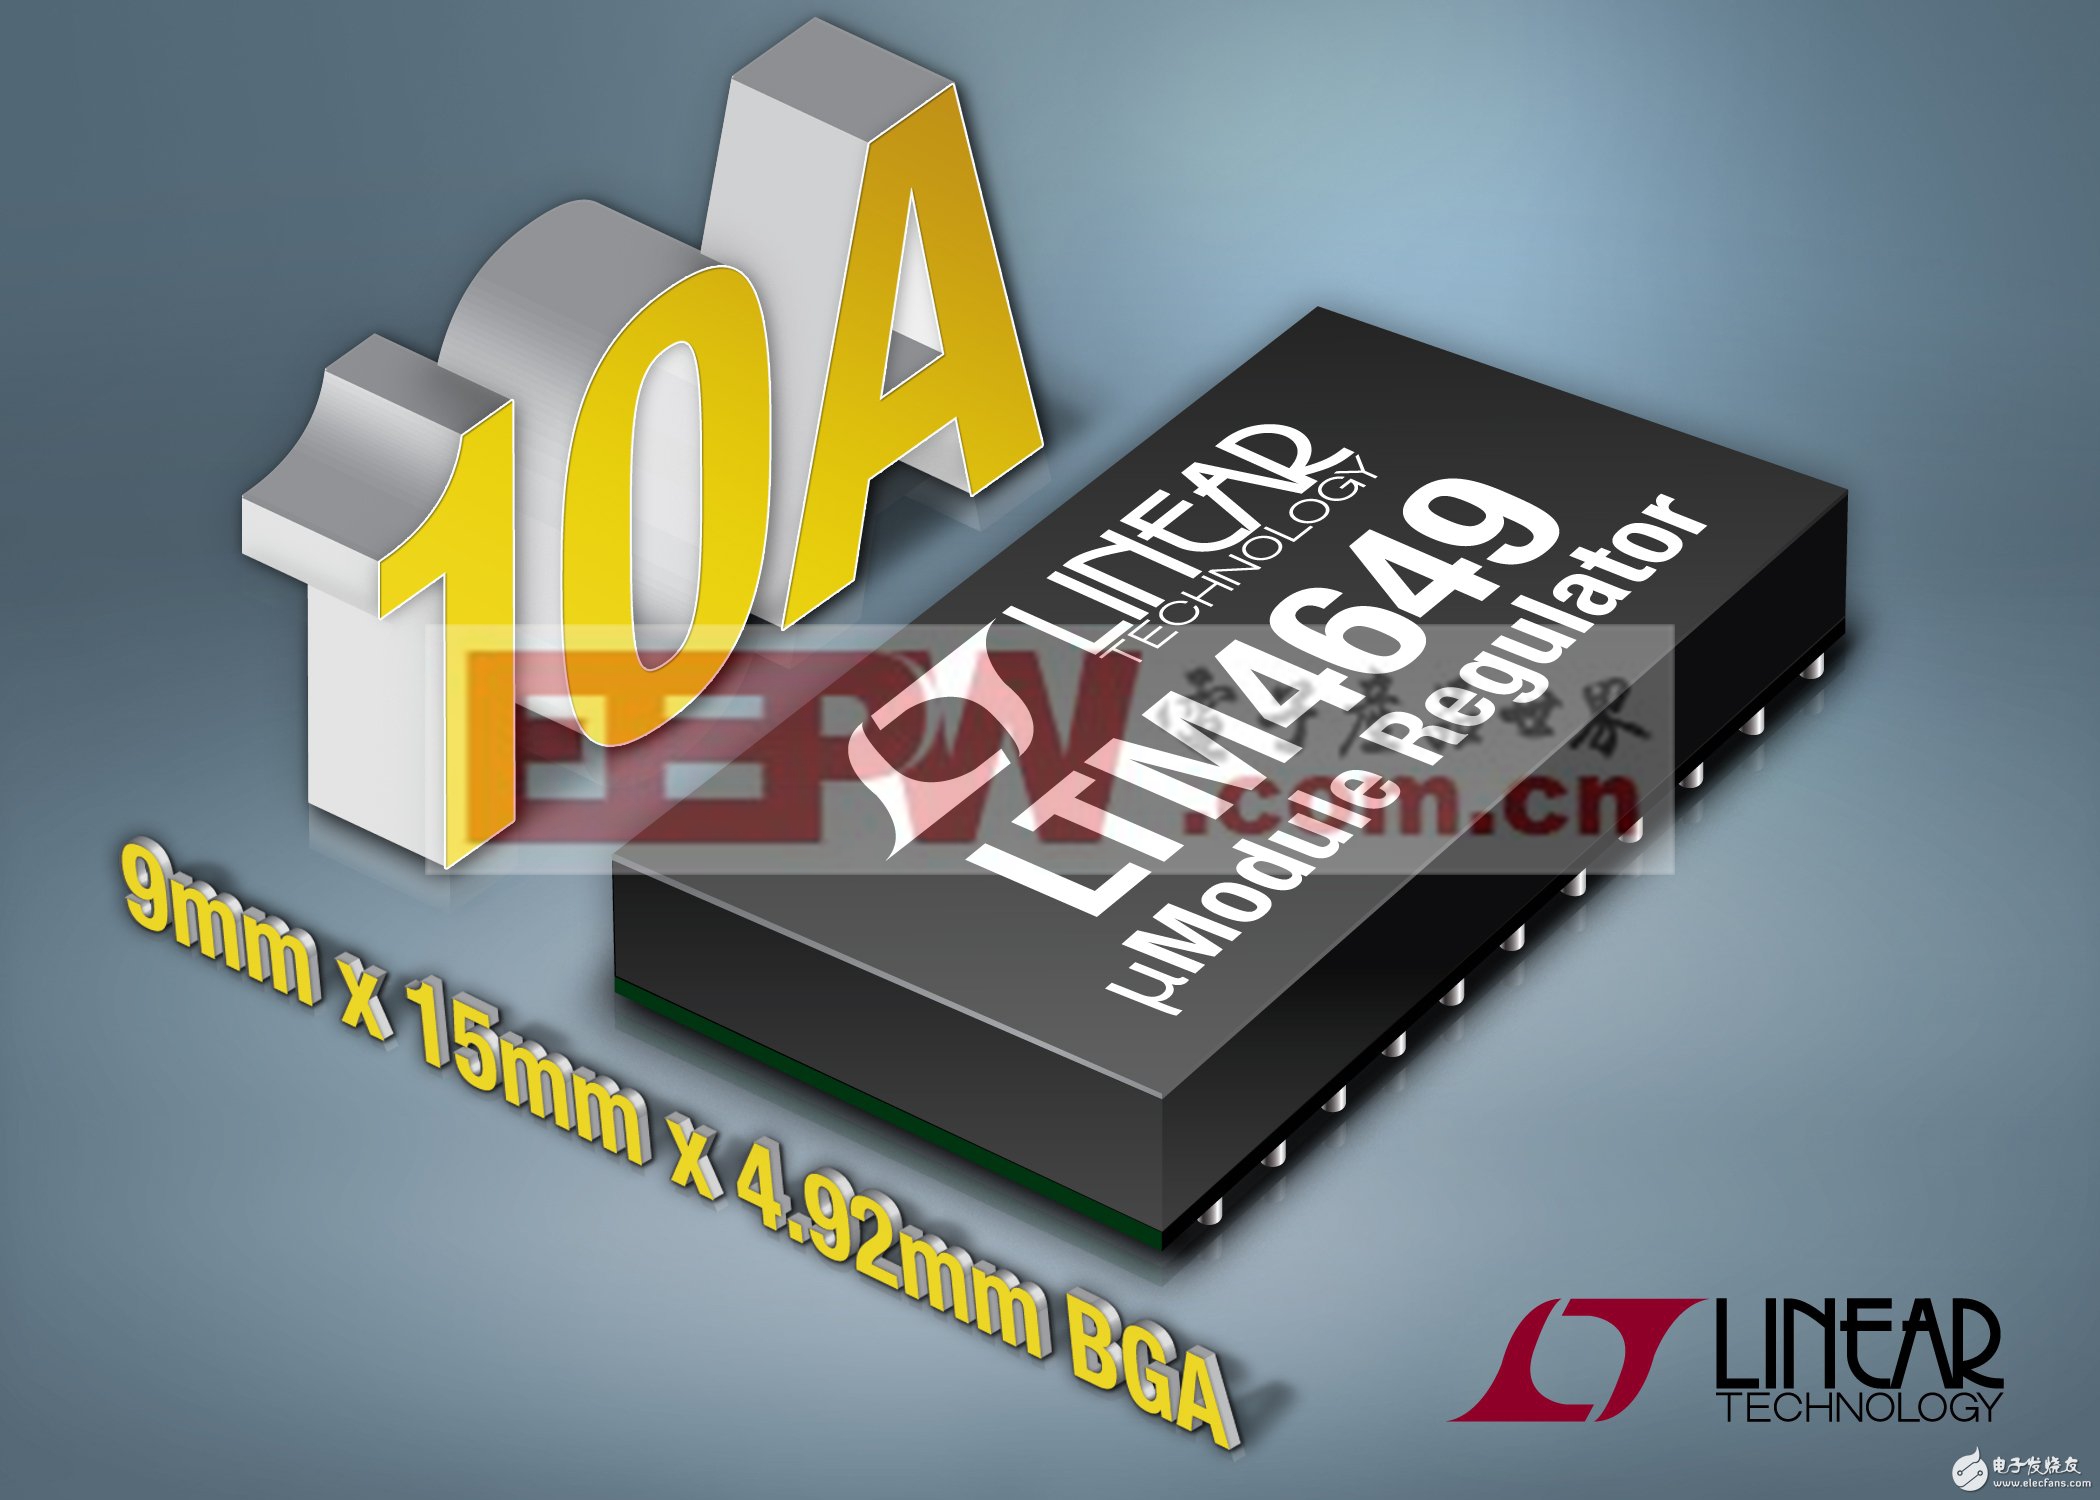 凌力尔特公司推出降压型微型模块稳压器LTM4649